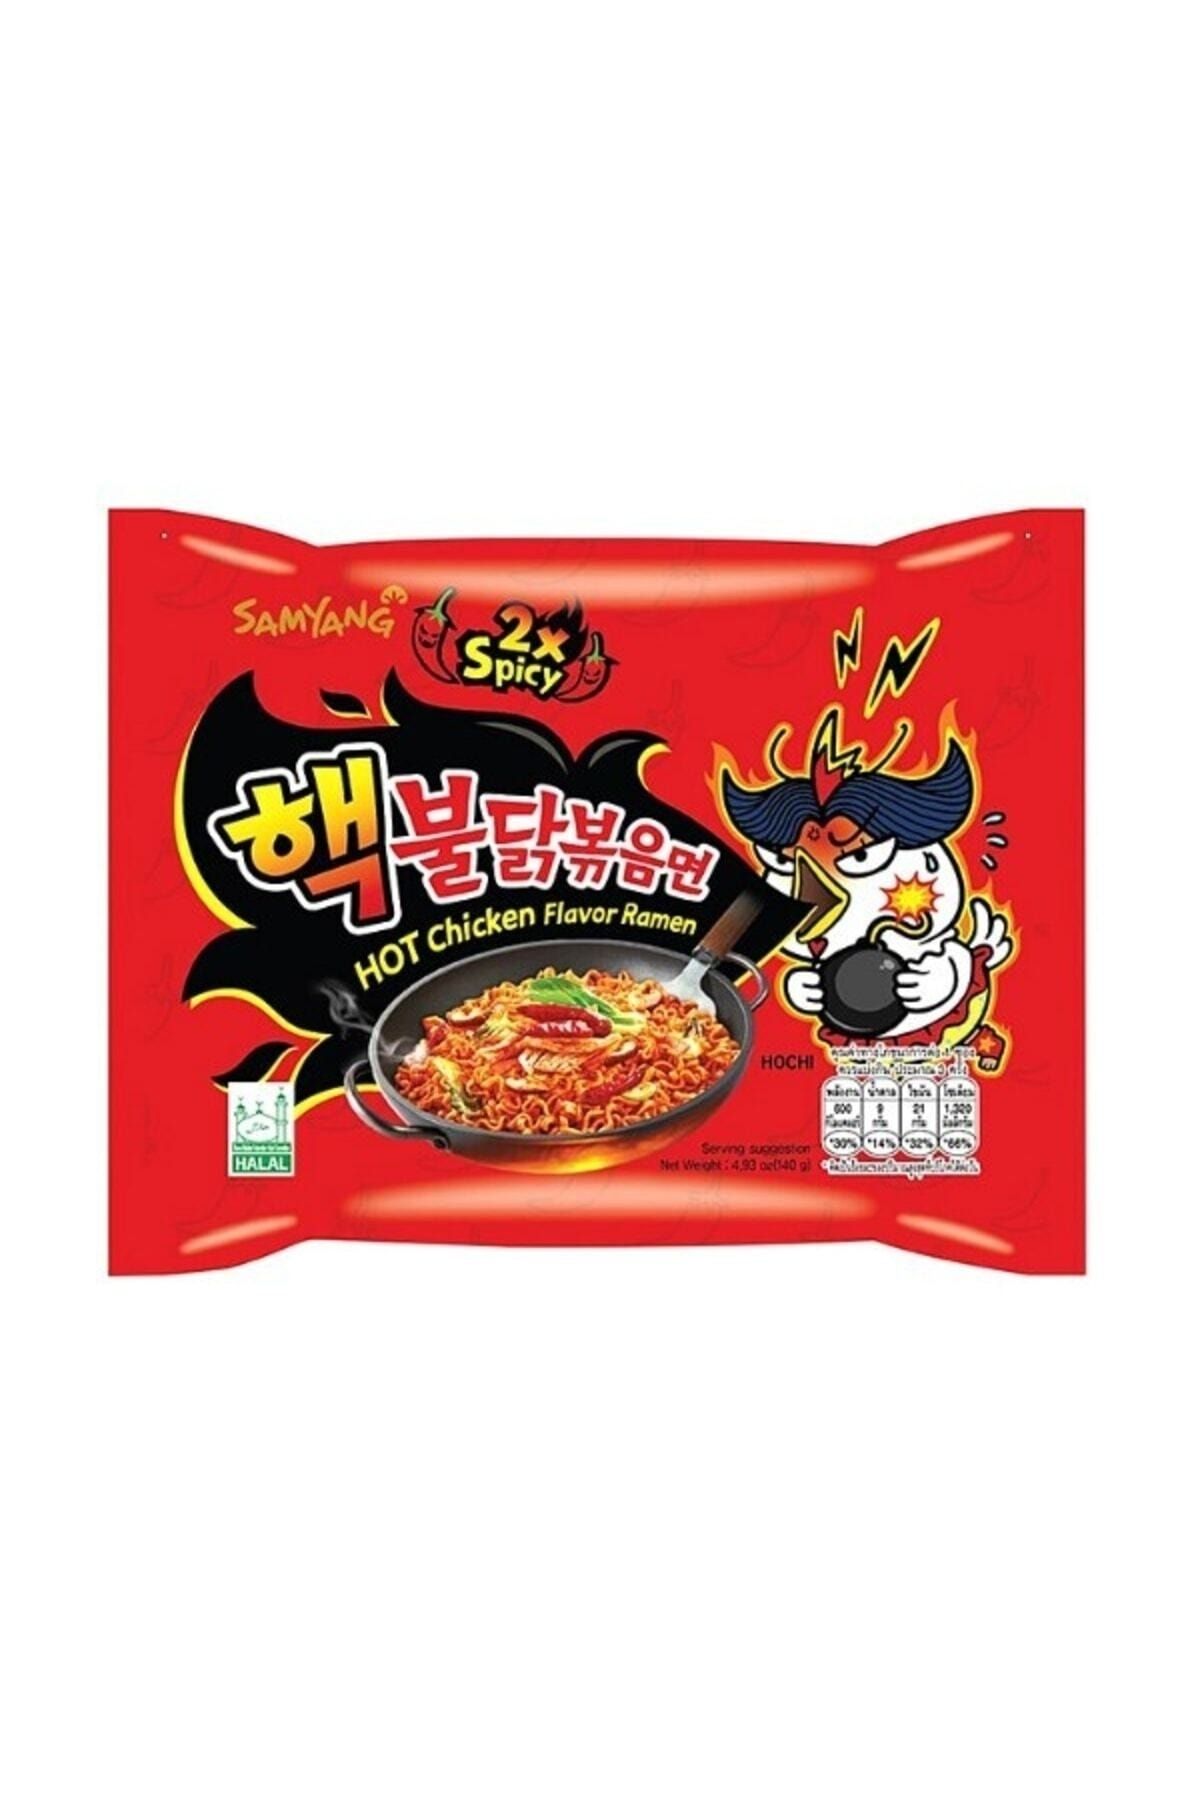 SAMYANG Buldak 2× Spicy Hot Chicken Flavor 140 G